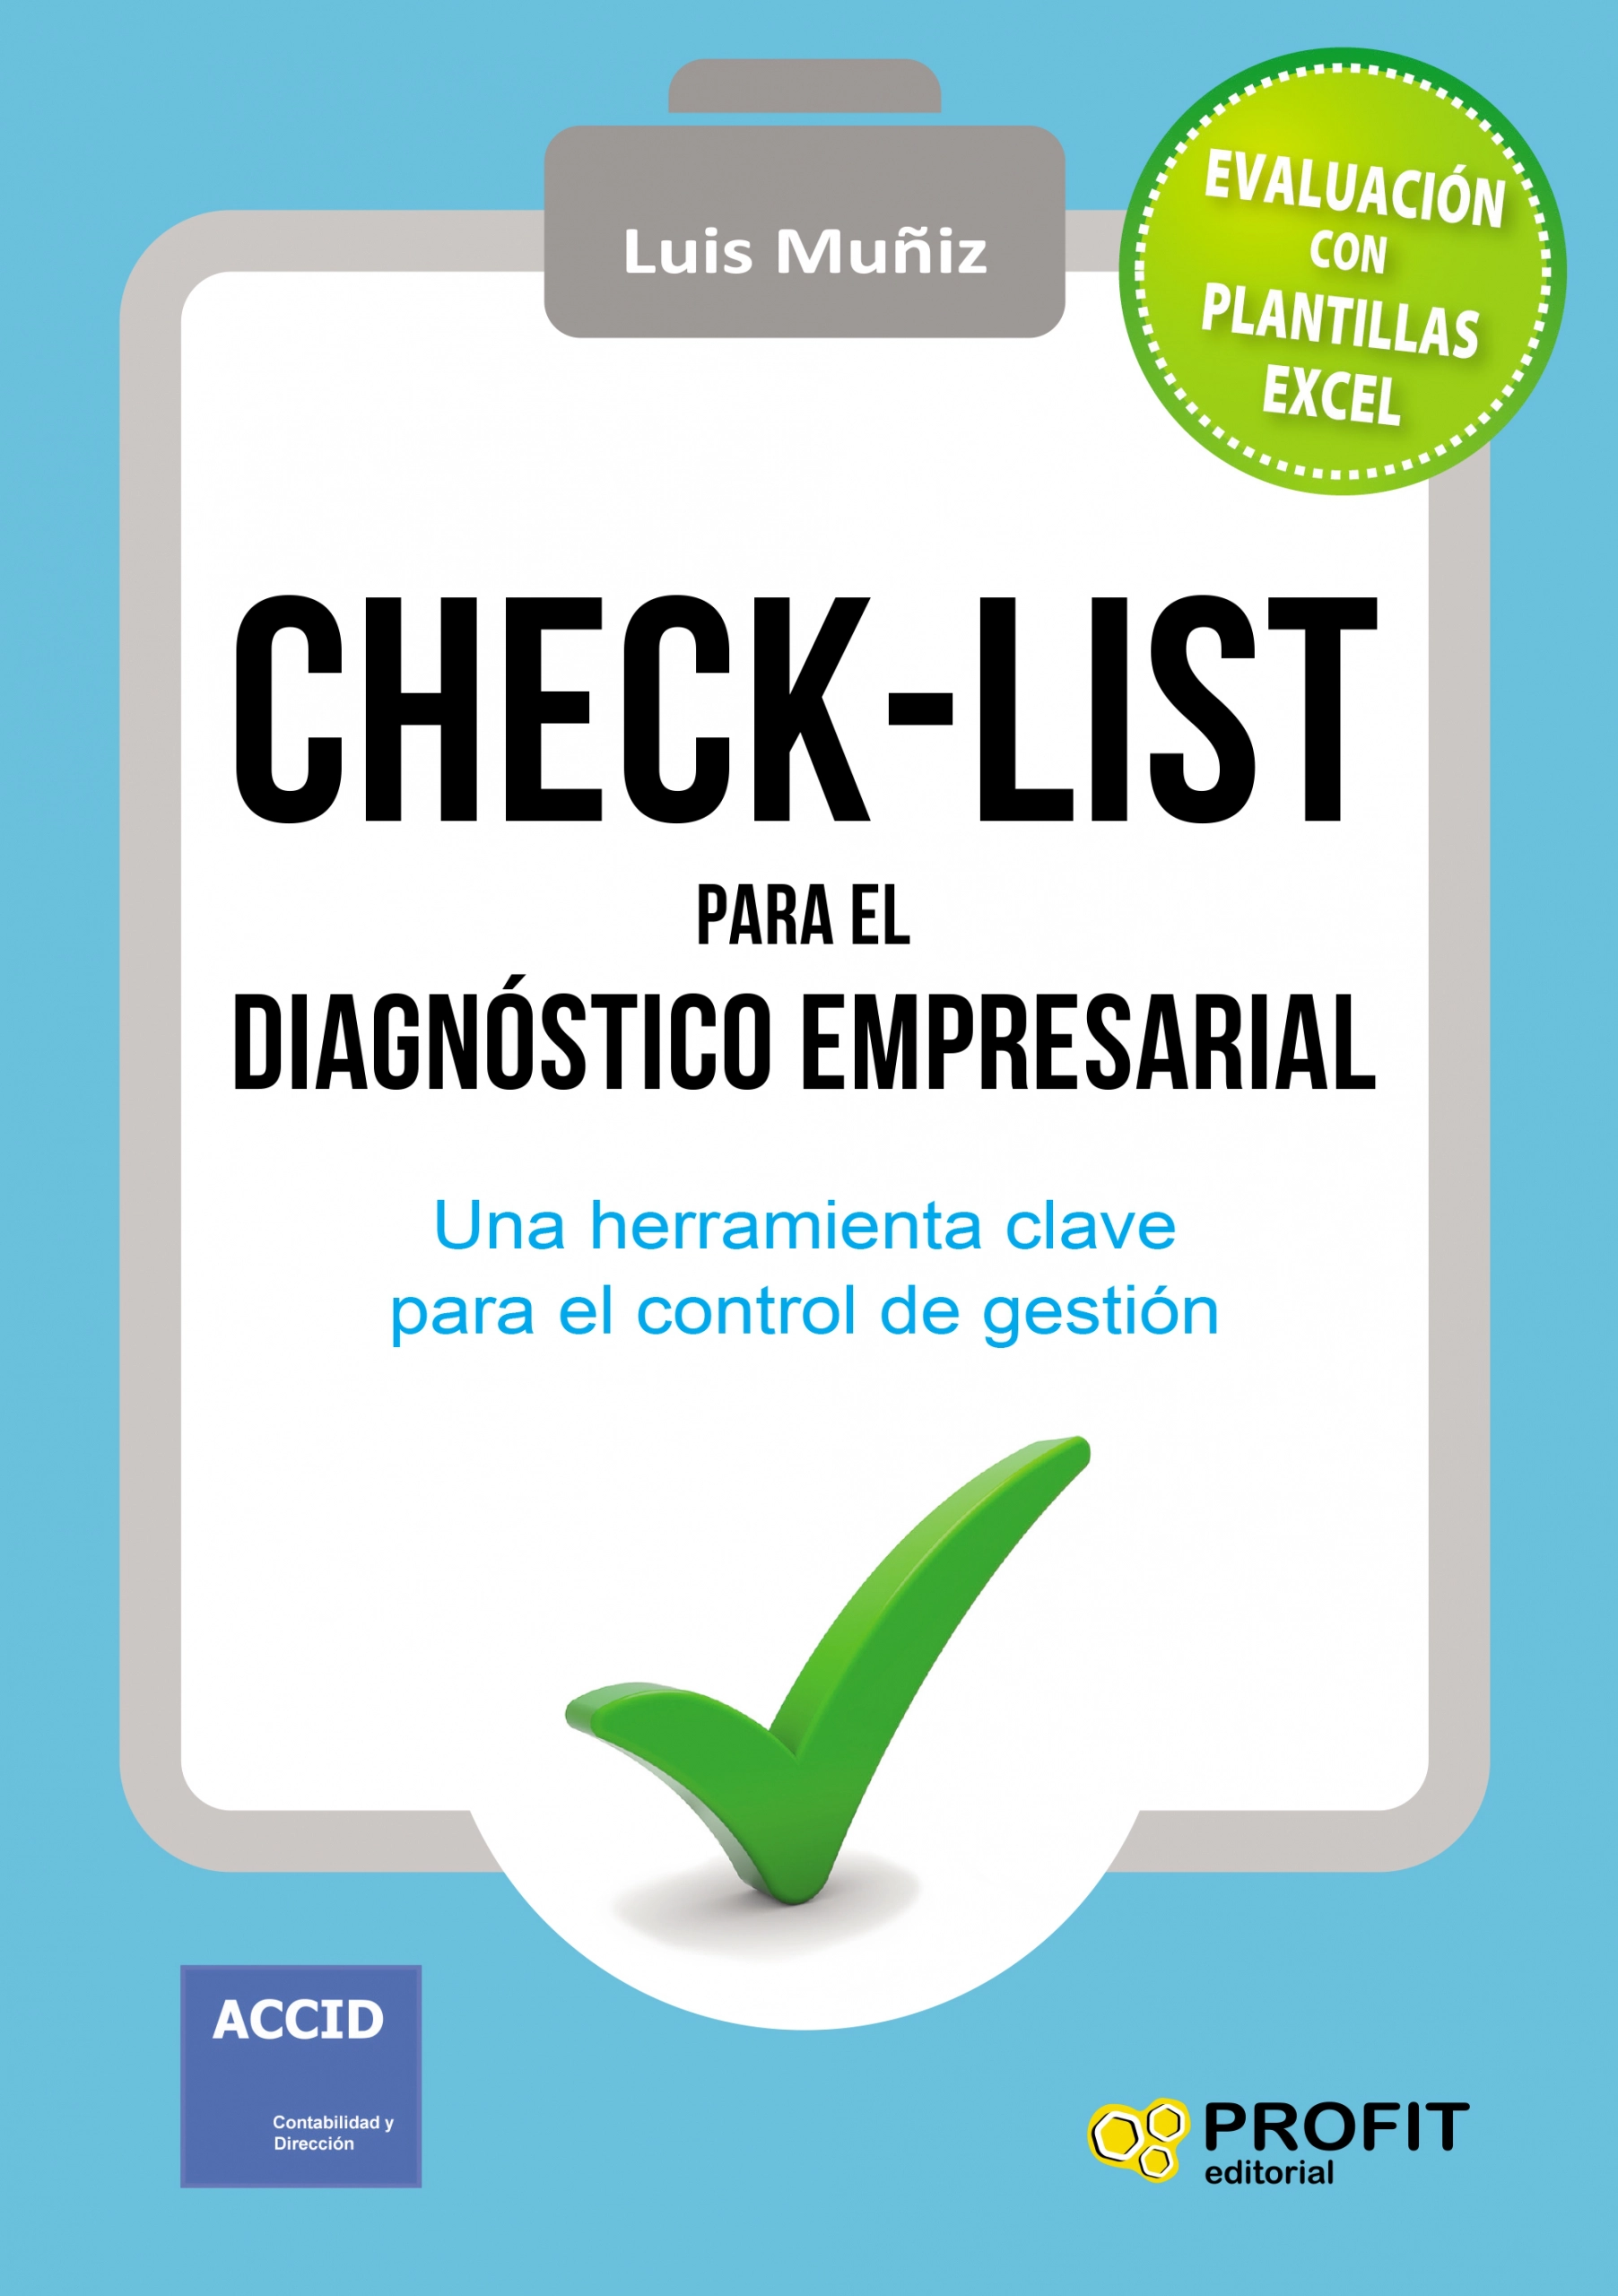 Check-list para el diagnóstico empresarial | Luís Muñiz | Libros de empresa y negocios